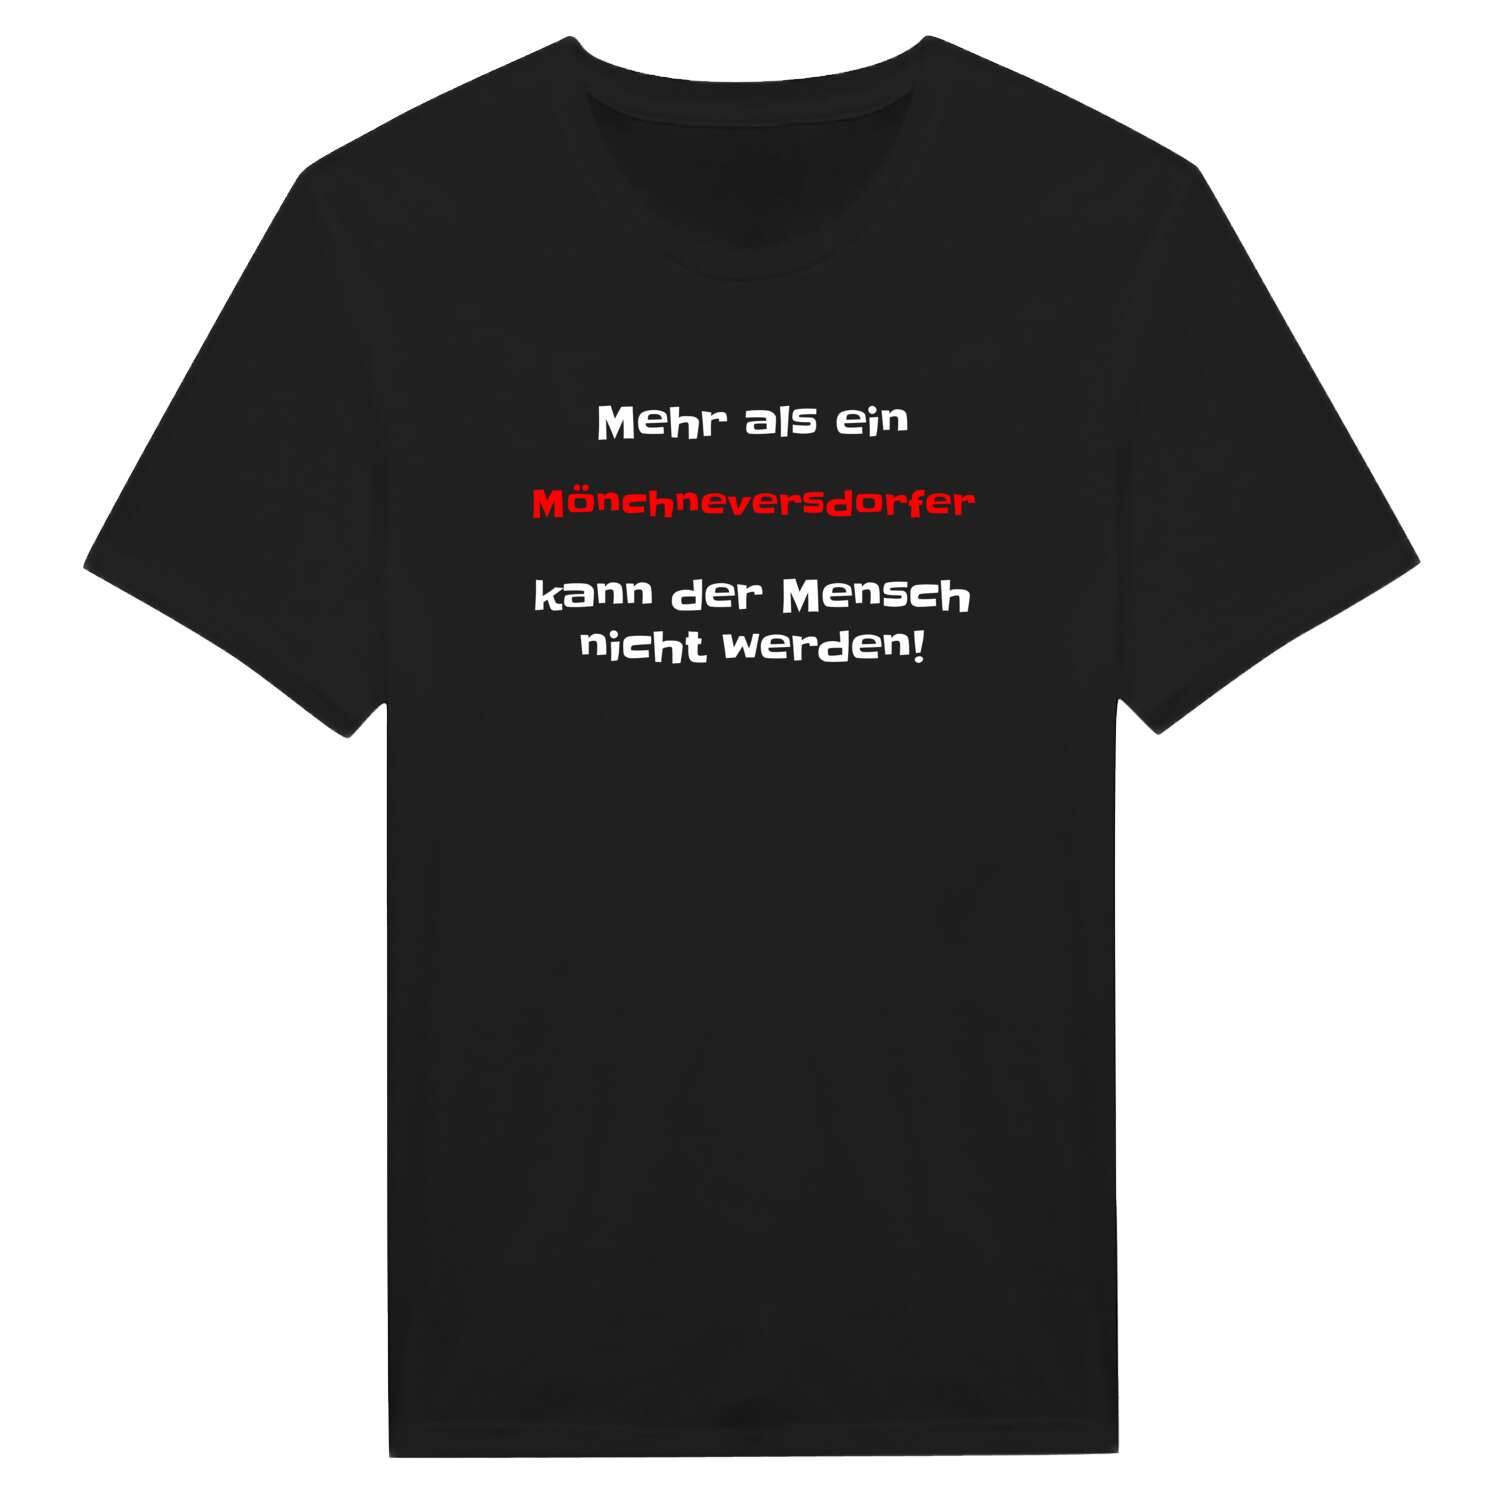 Mönchneversdorf T-Shirt »Mehr als ein«